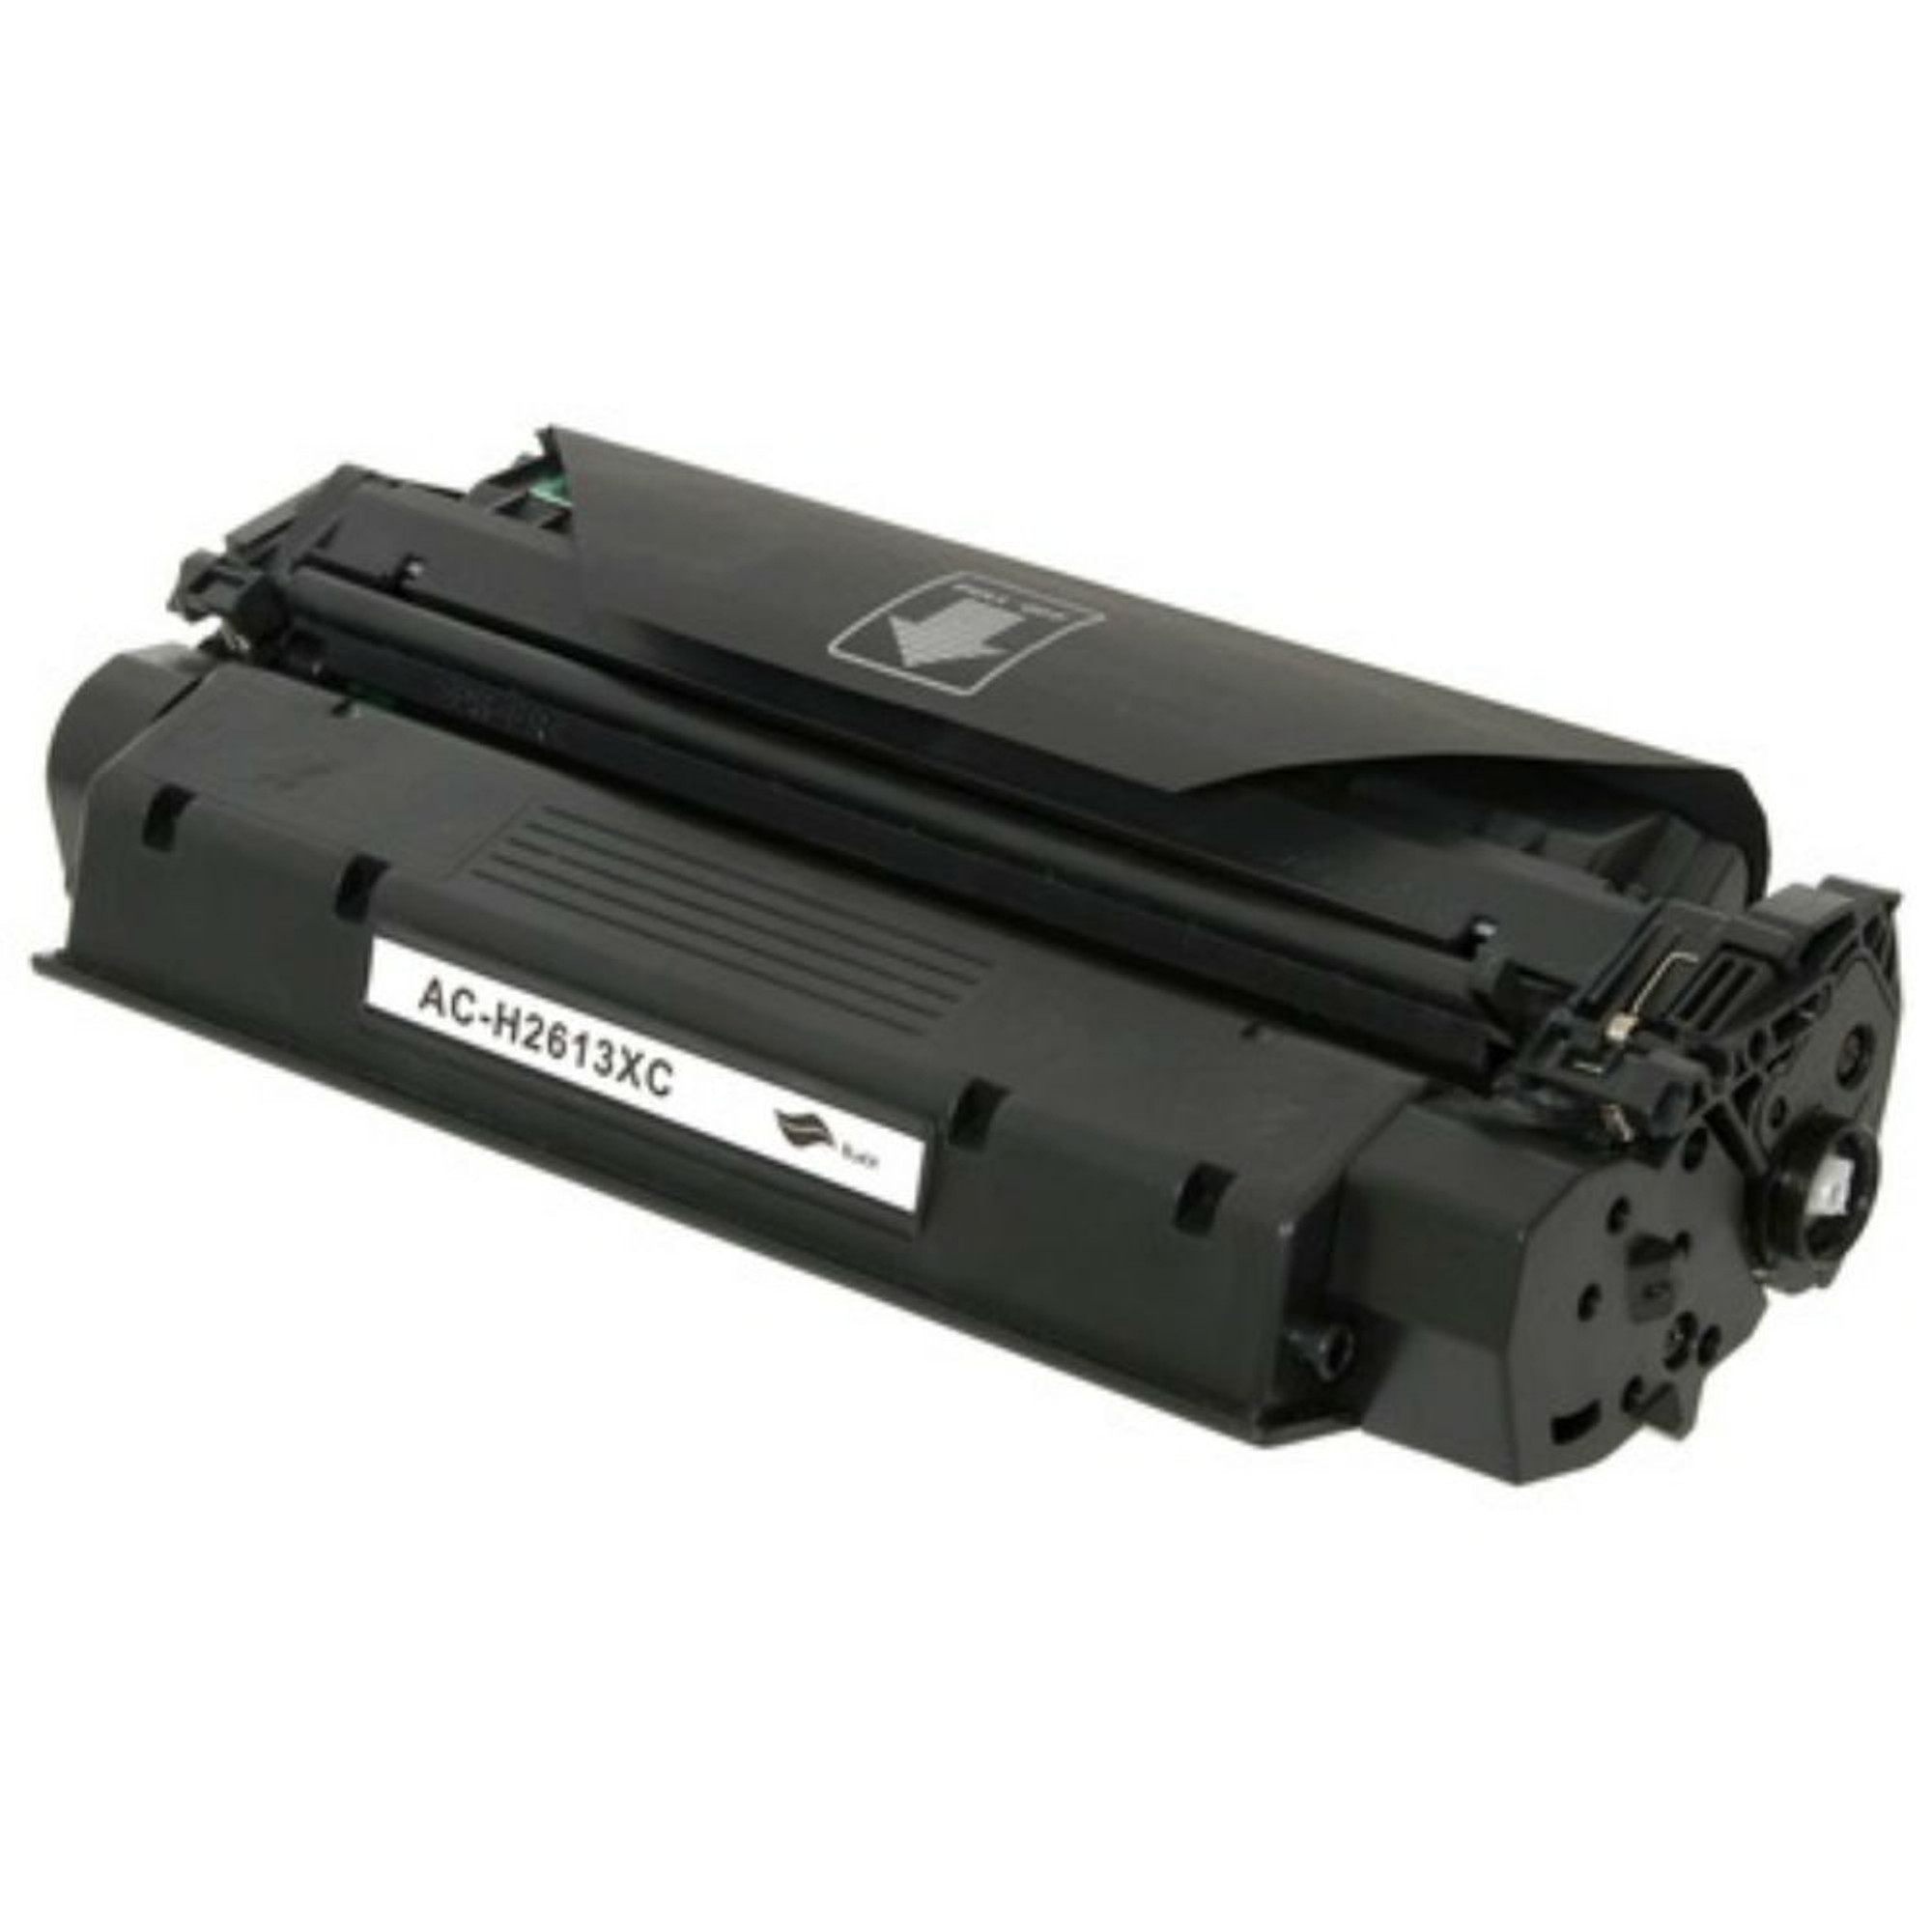 postkontor forsendelse Tænk fremad MICR Toner for the HP Laserjet 1300, 1300n, & 1300xi Printers